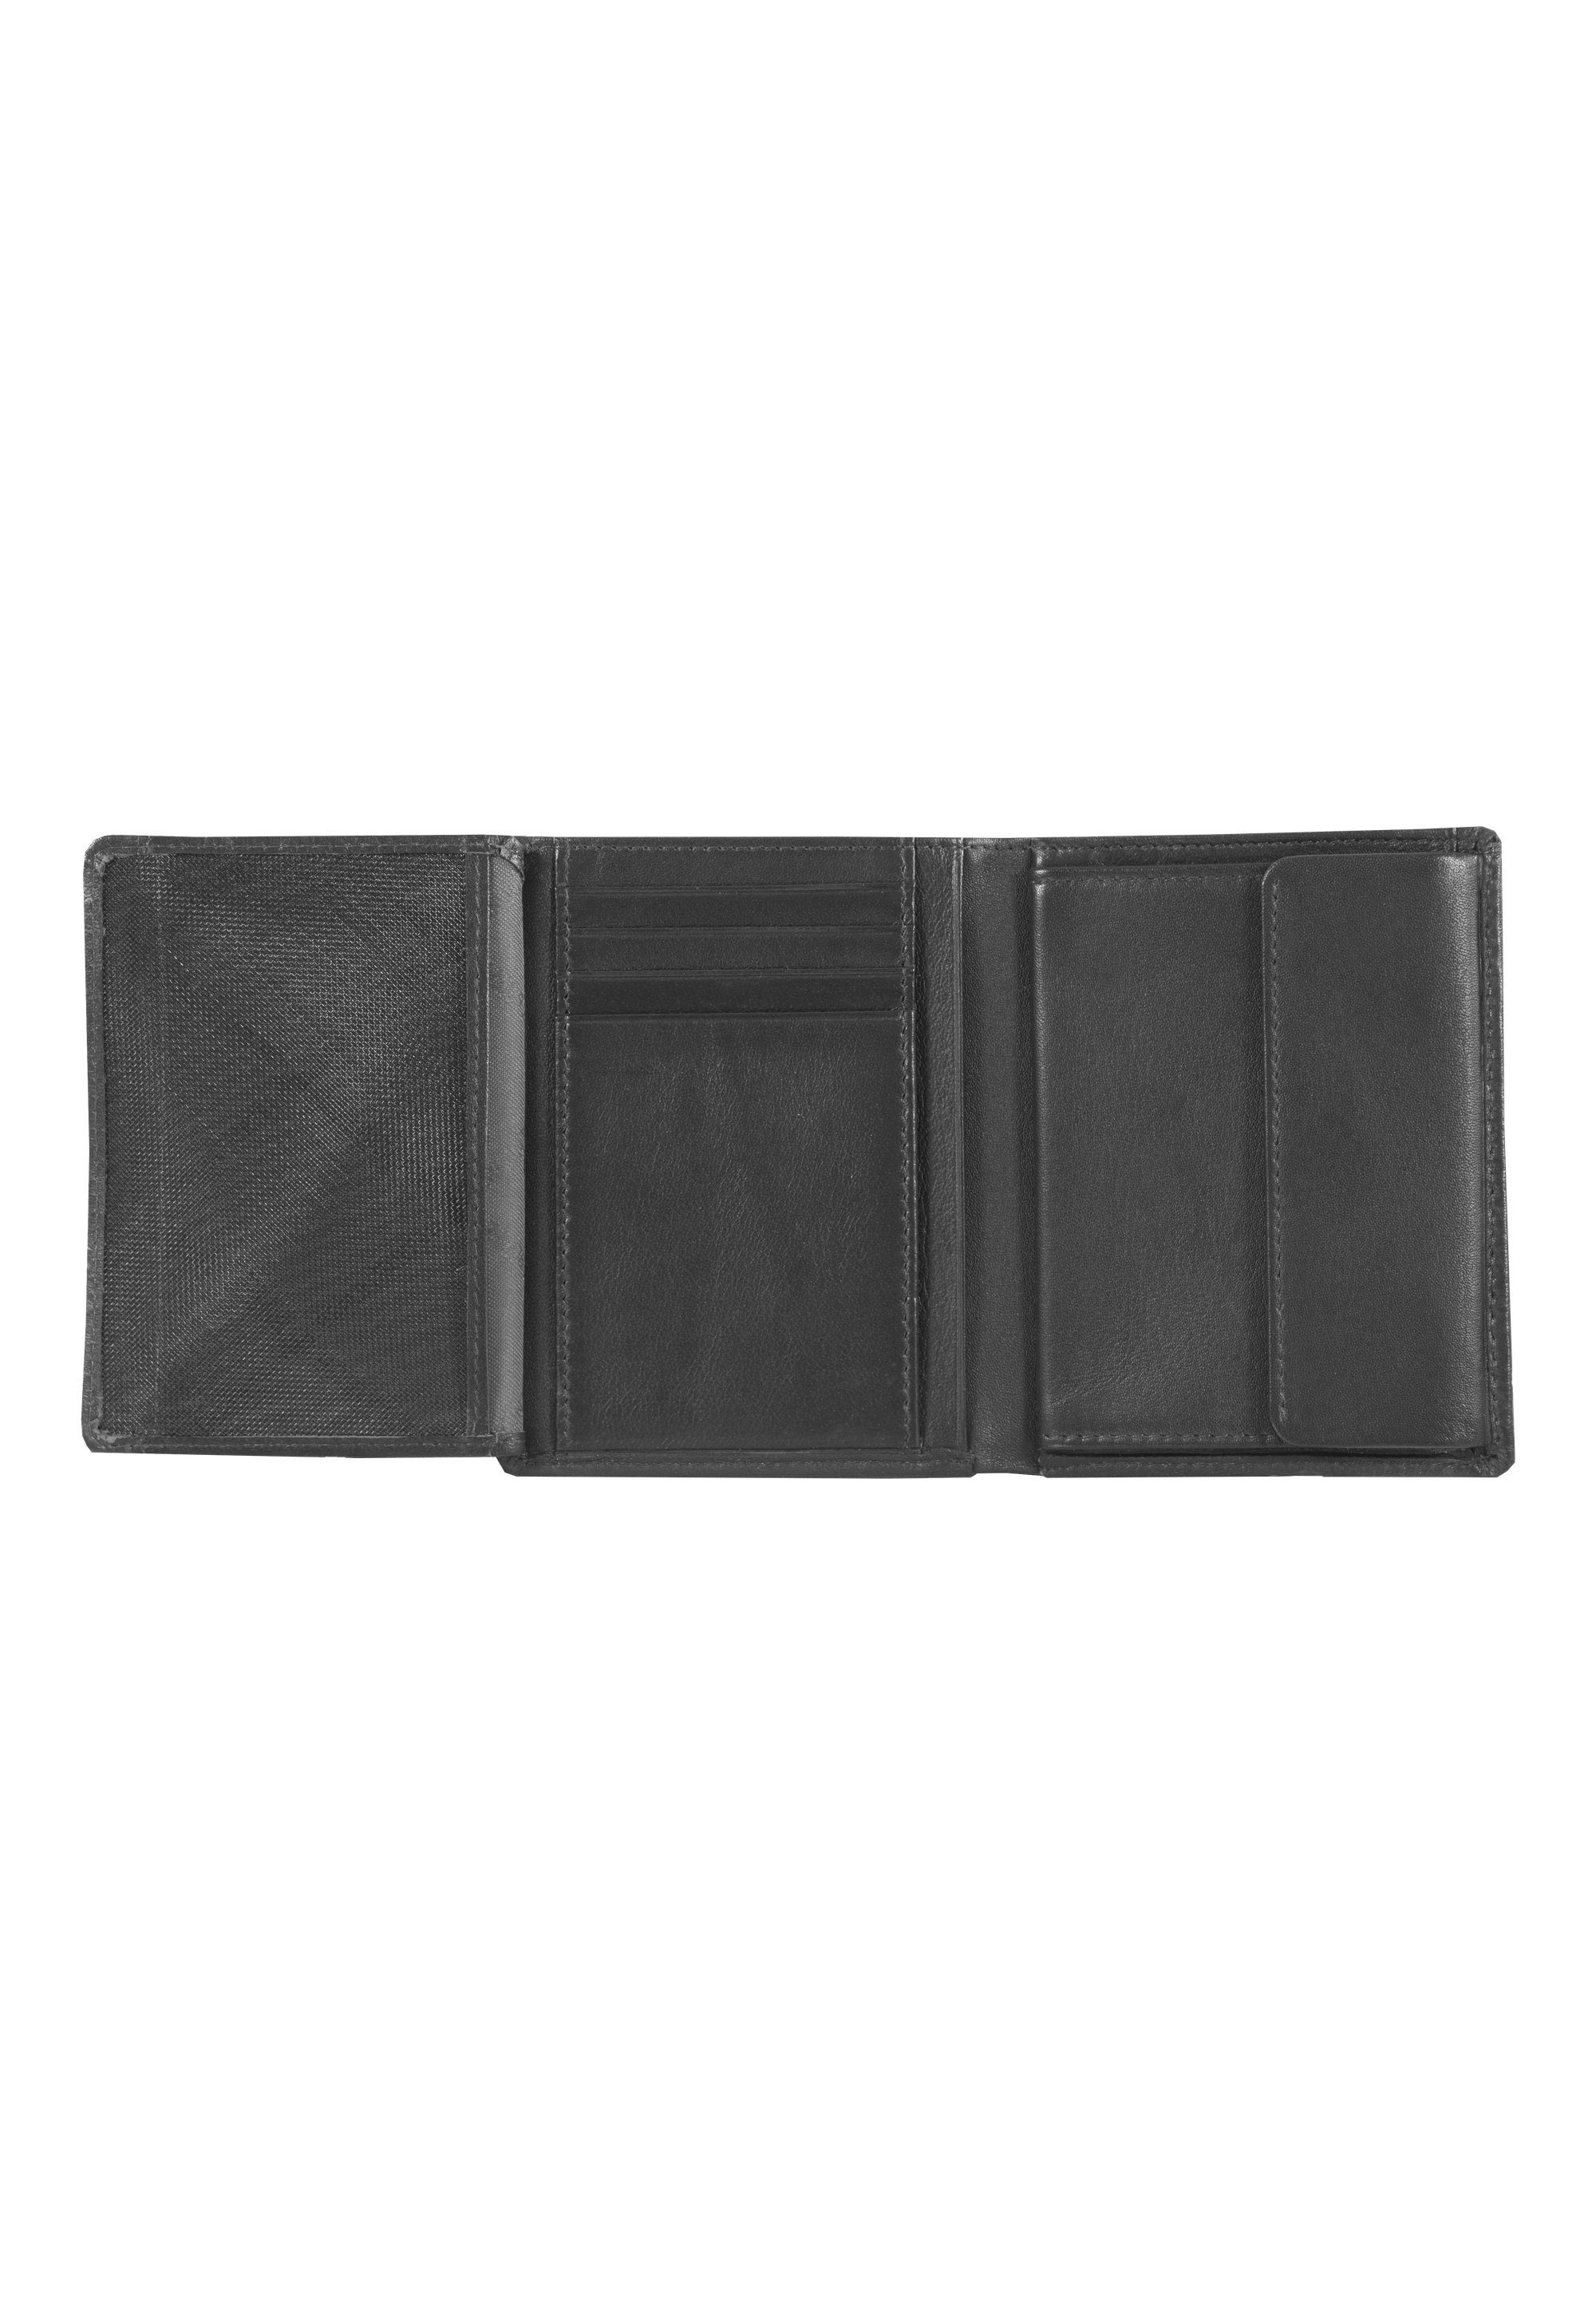 Braun Büffel schwarz Hochkantformat im HENRY, Brieftasche